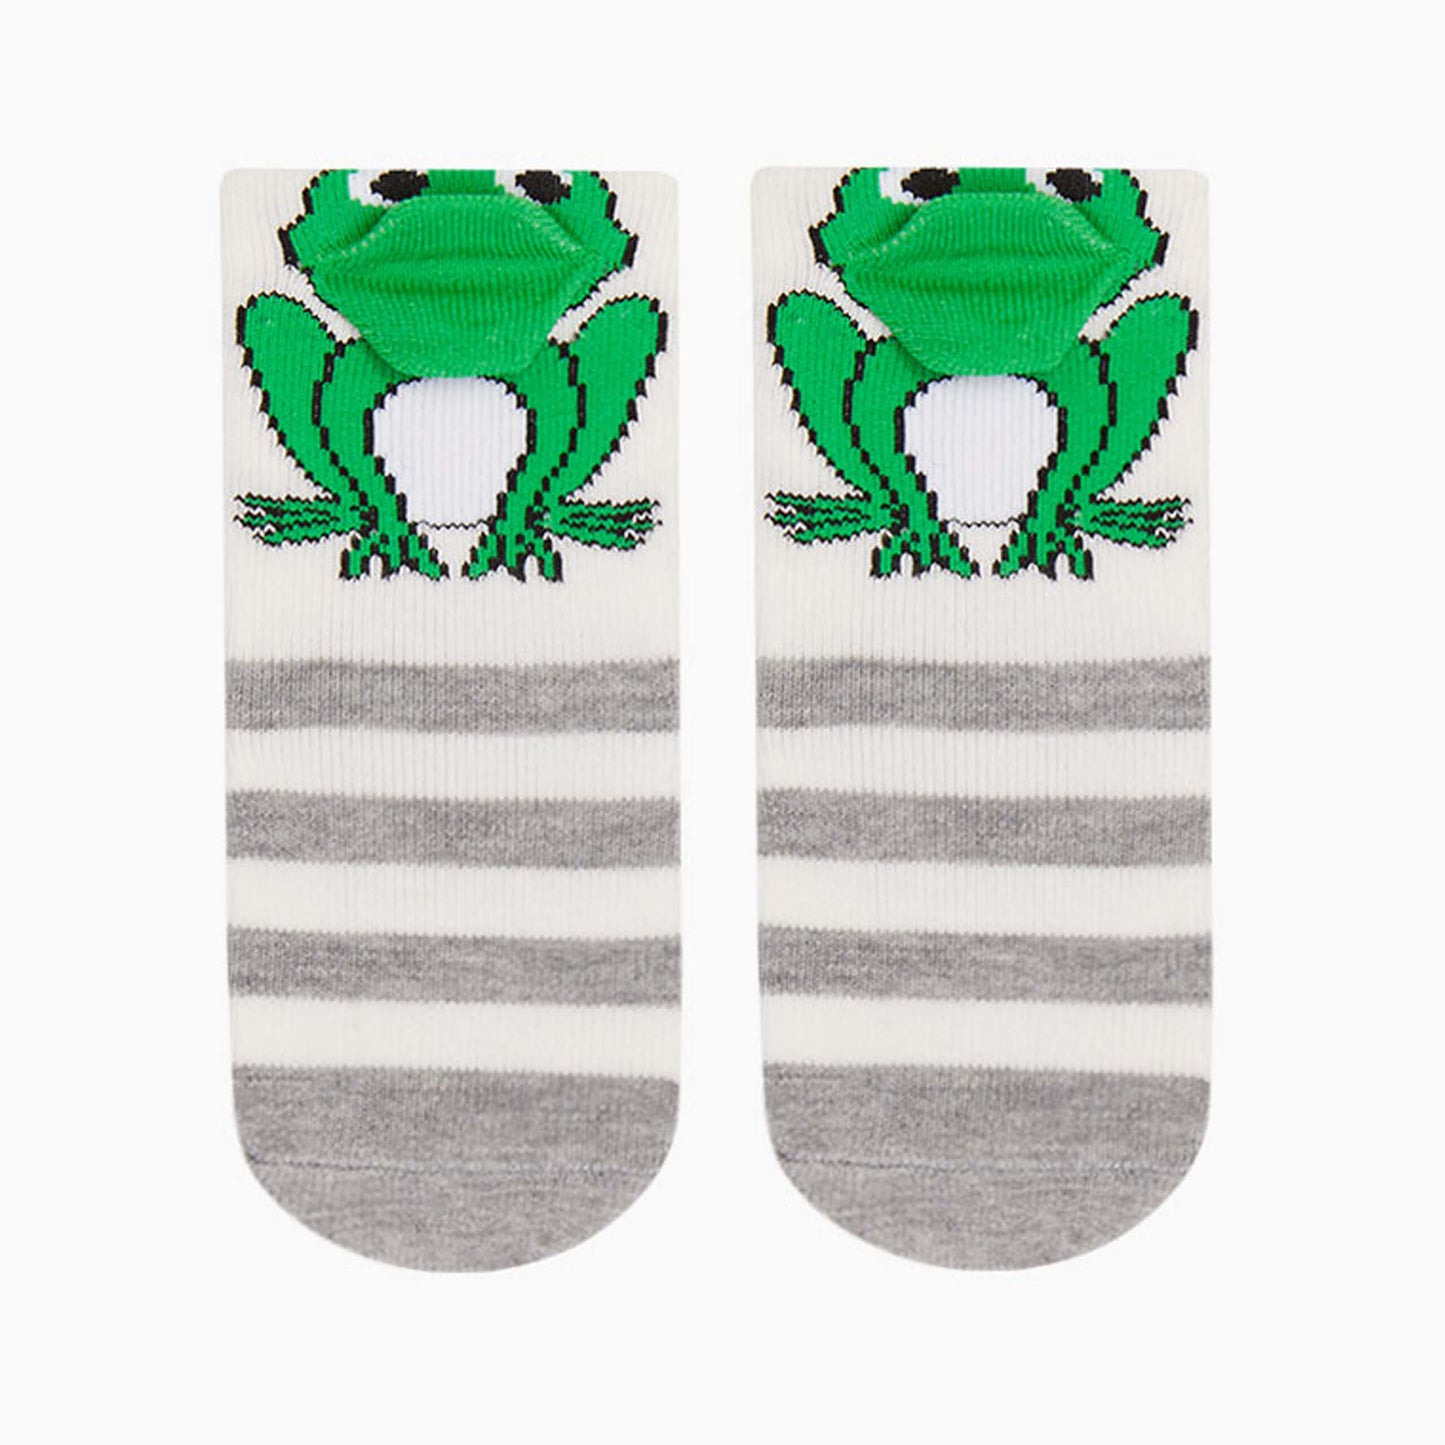 Baby Socks, Newborn Sock For Baby Boys, 3D Frog Green Striped Hosiery, Baby Shark Infant Socks, 0-6, 6-12, 12-18 Months Old, Animal Socks